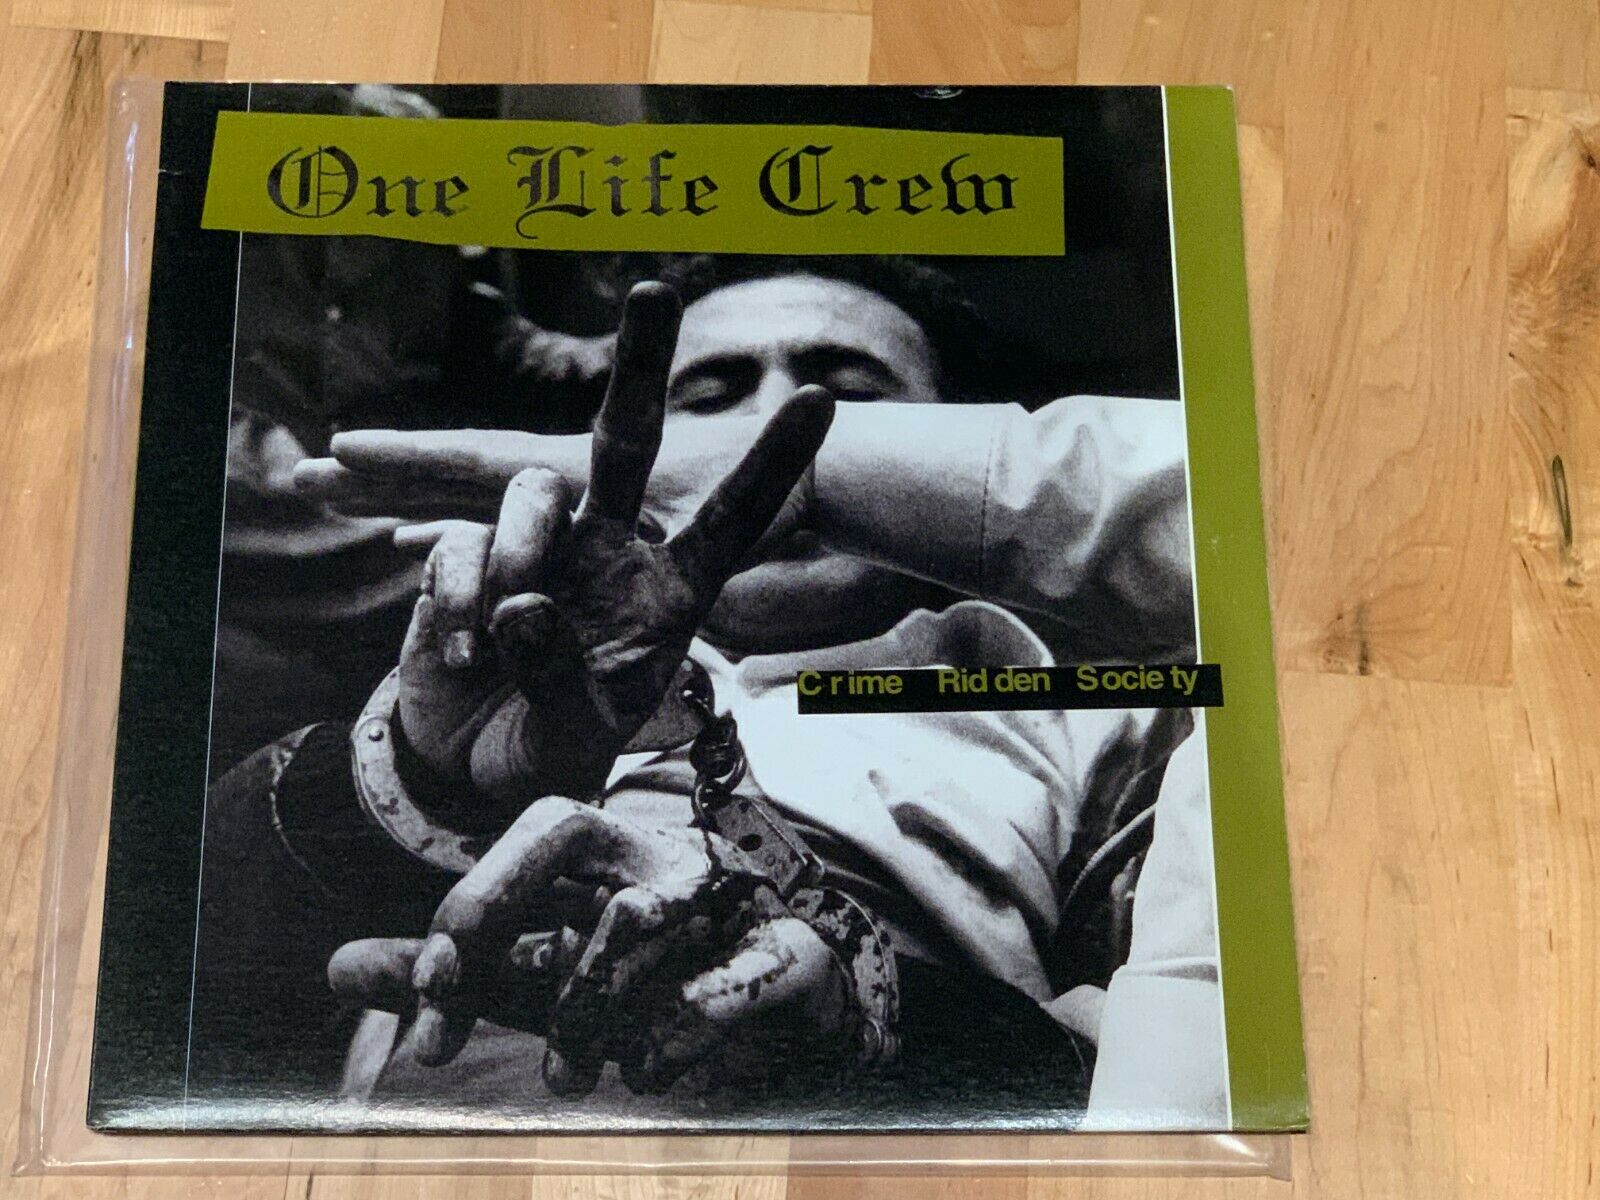 新品未開封 One Life Crew CD Nyhc